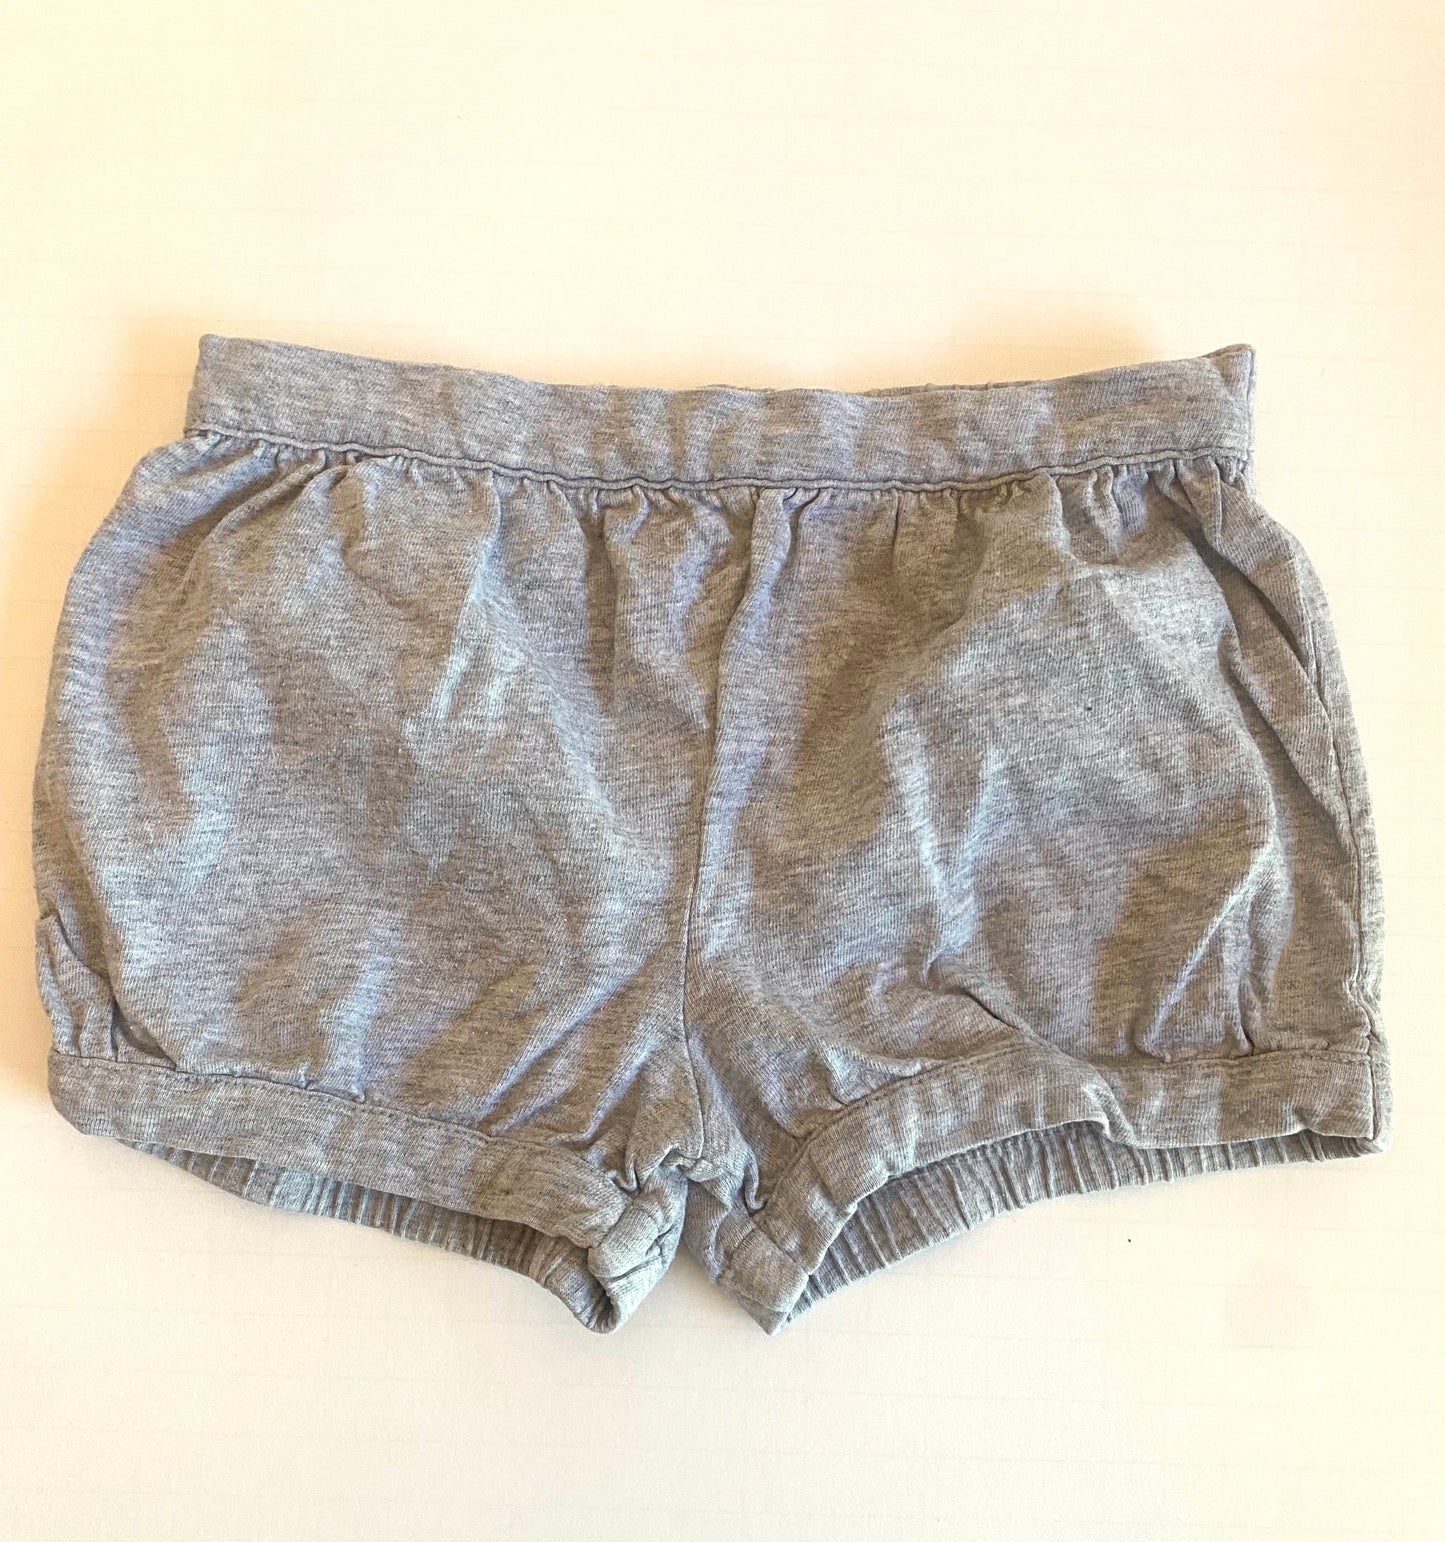 Girls 24 mo shorts, grey, carters